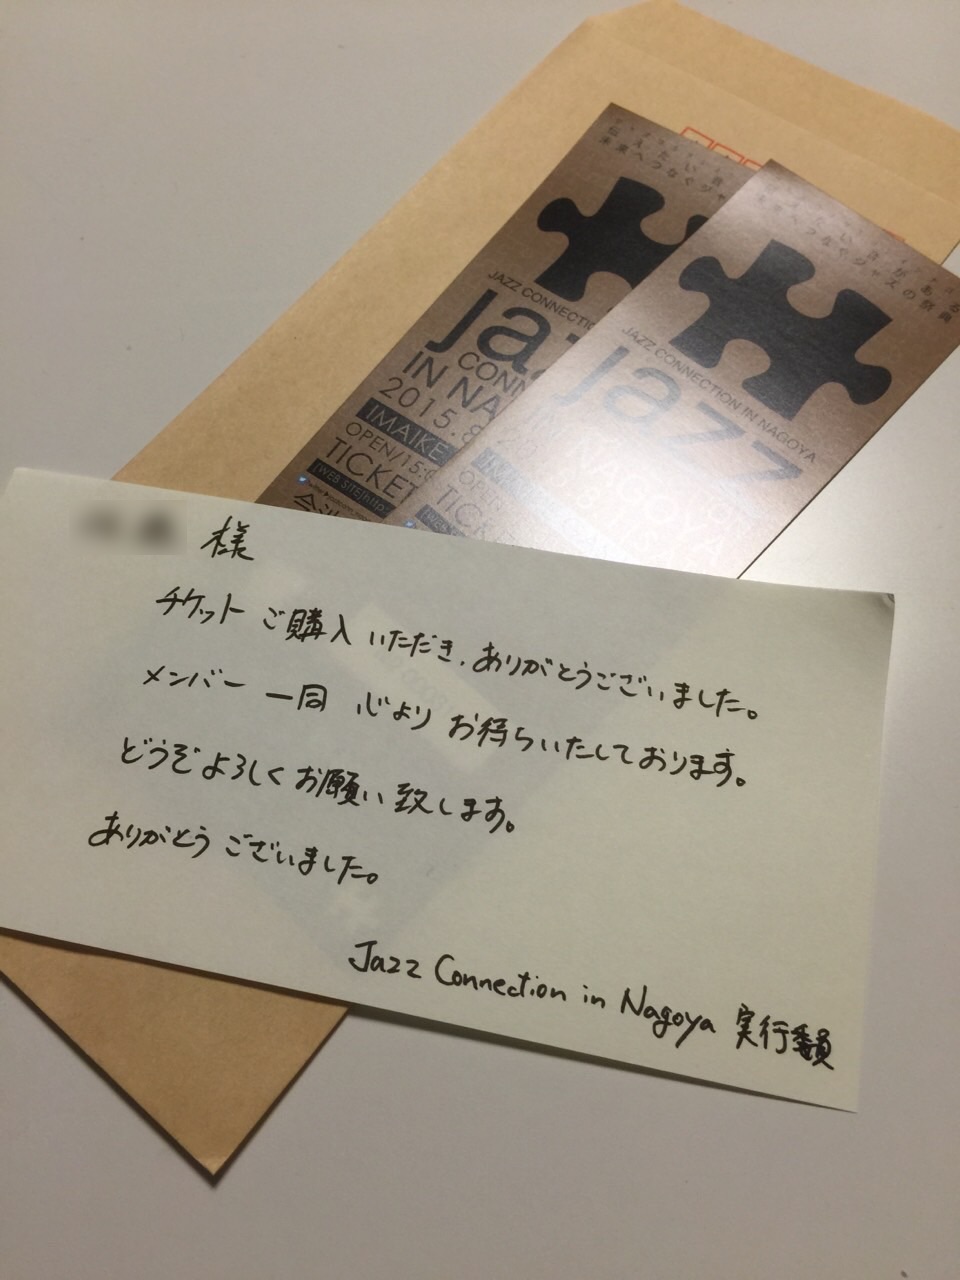 チケット発送しています Jazz Connection In Nagoya